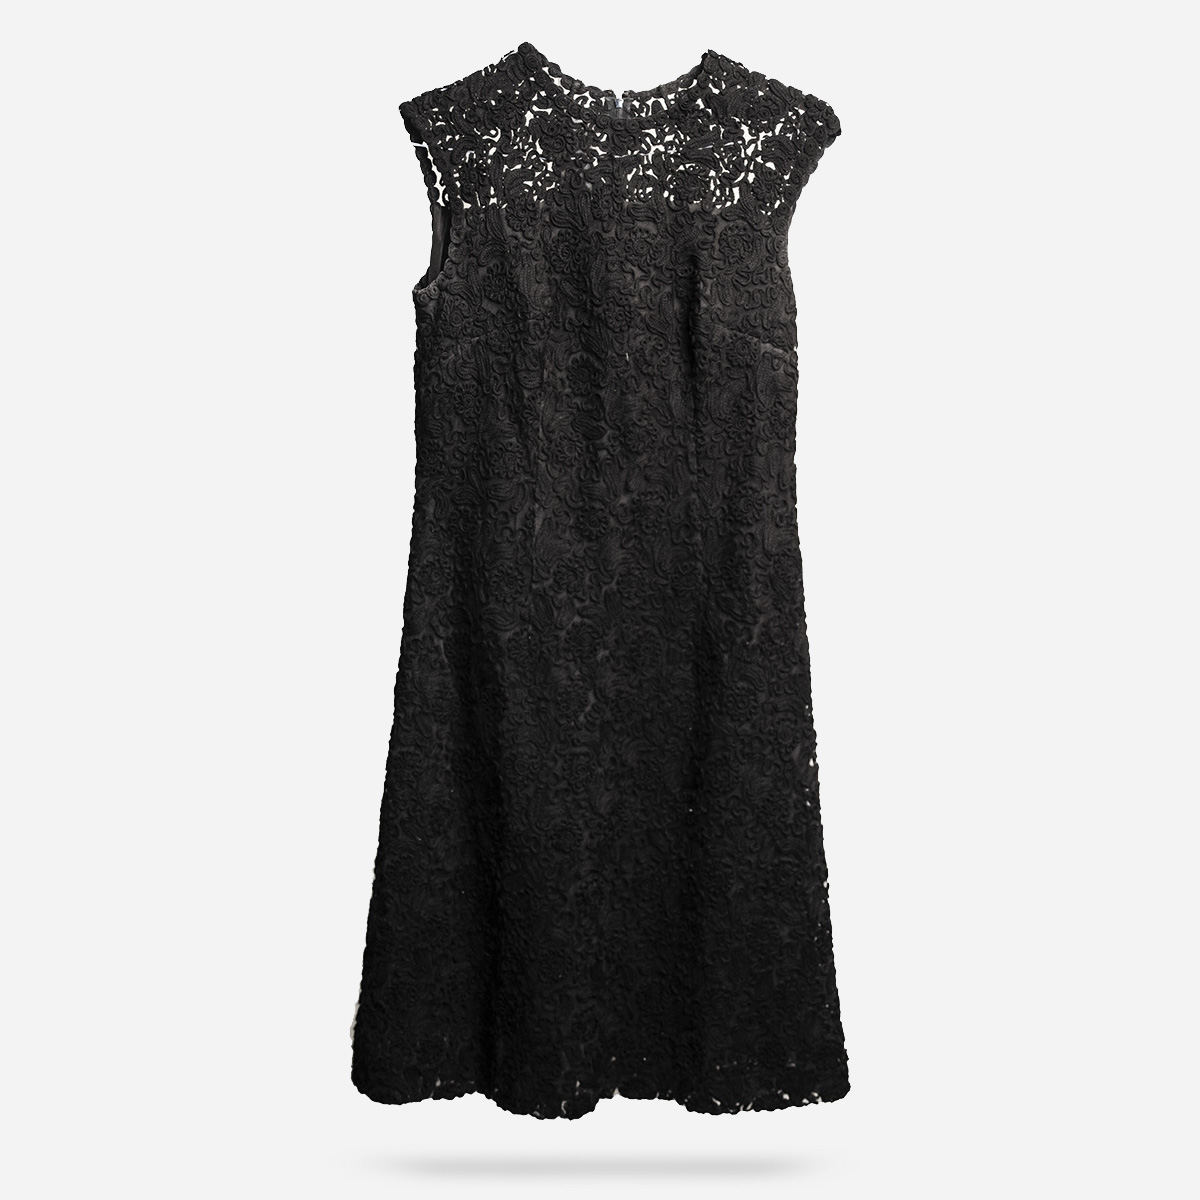 1960s Black lace cocktail dress